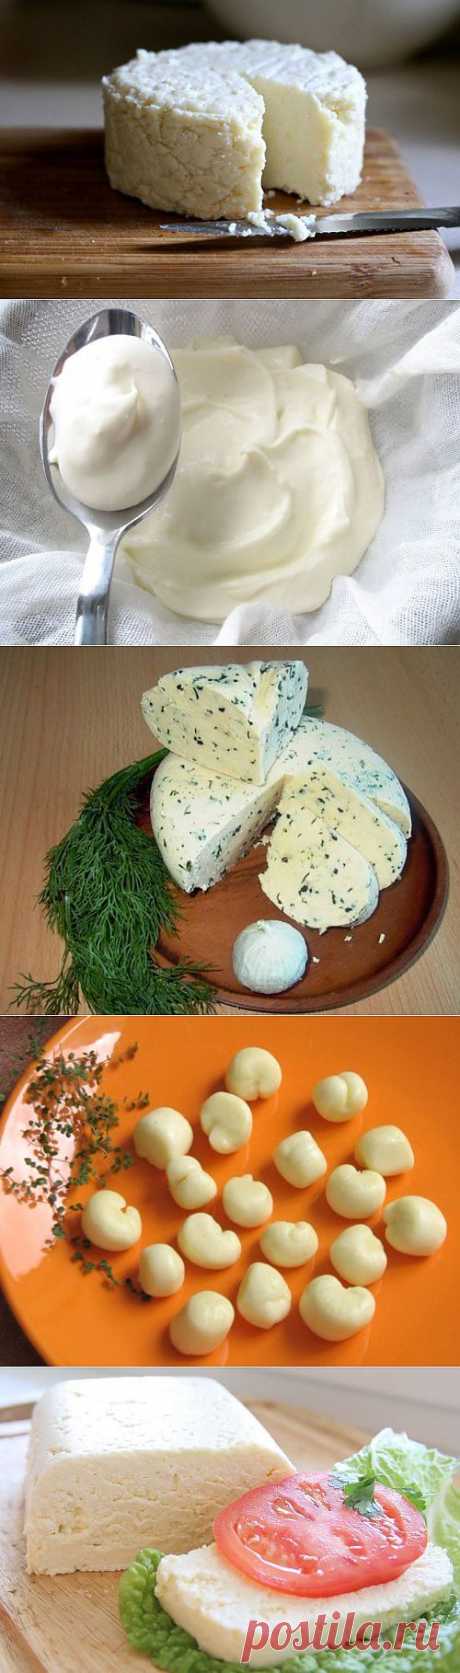 Домашний сыр – проще, чем кажется / Простые рецепты (подборка)